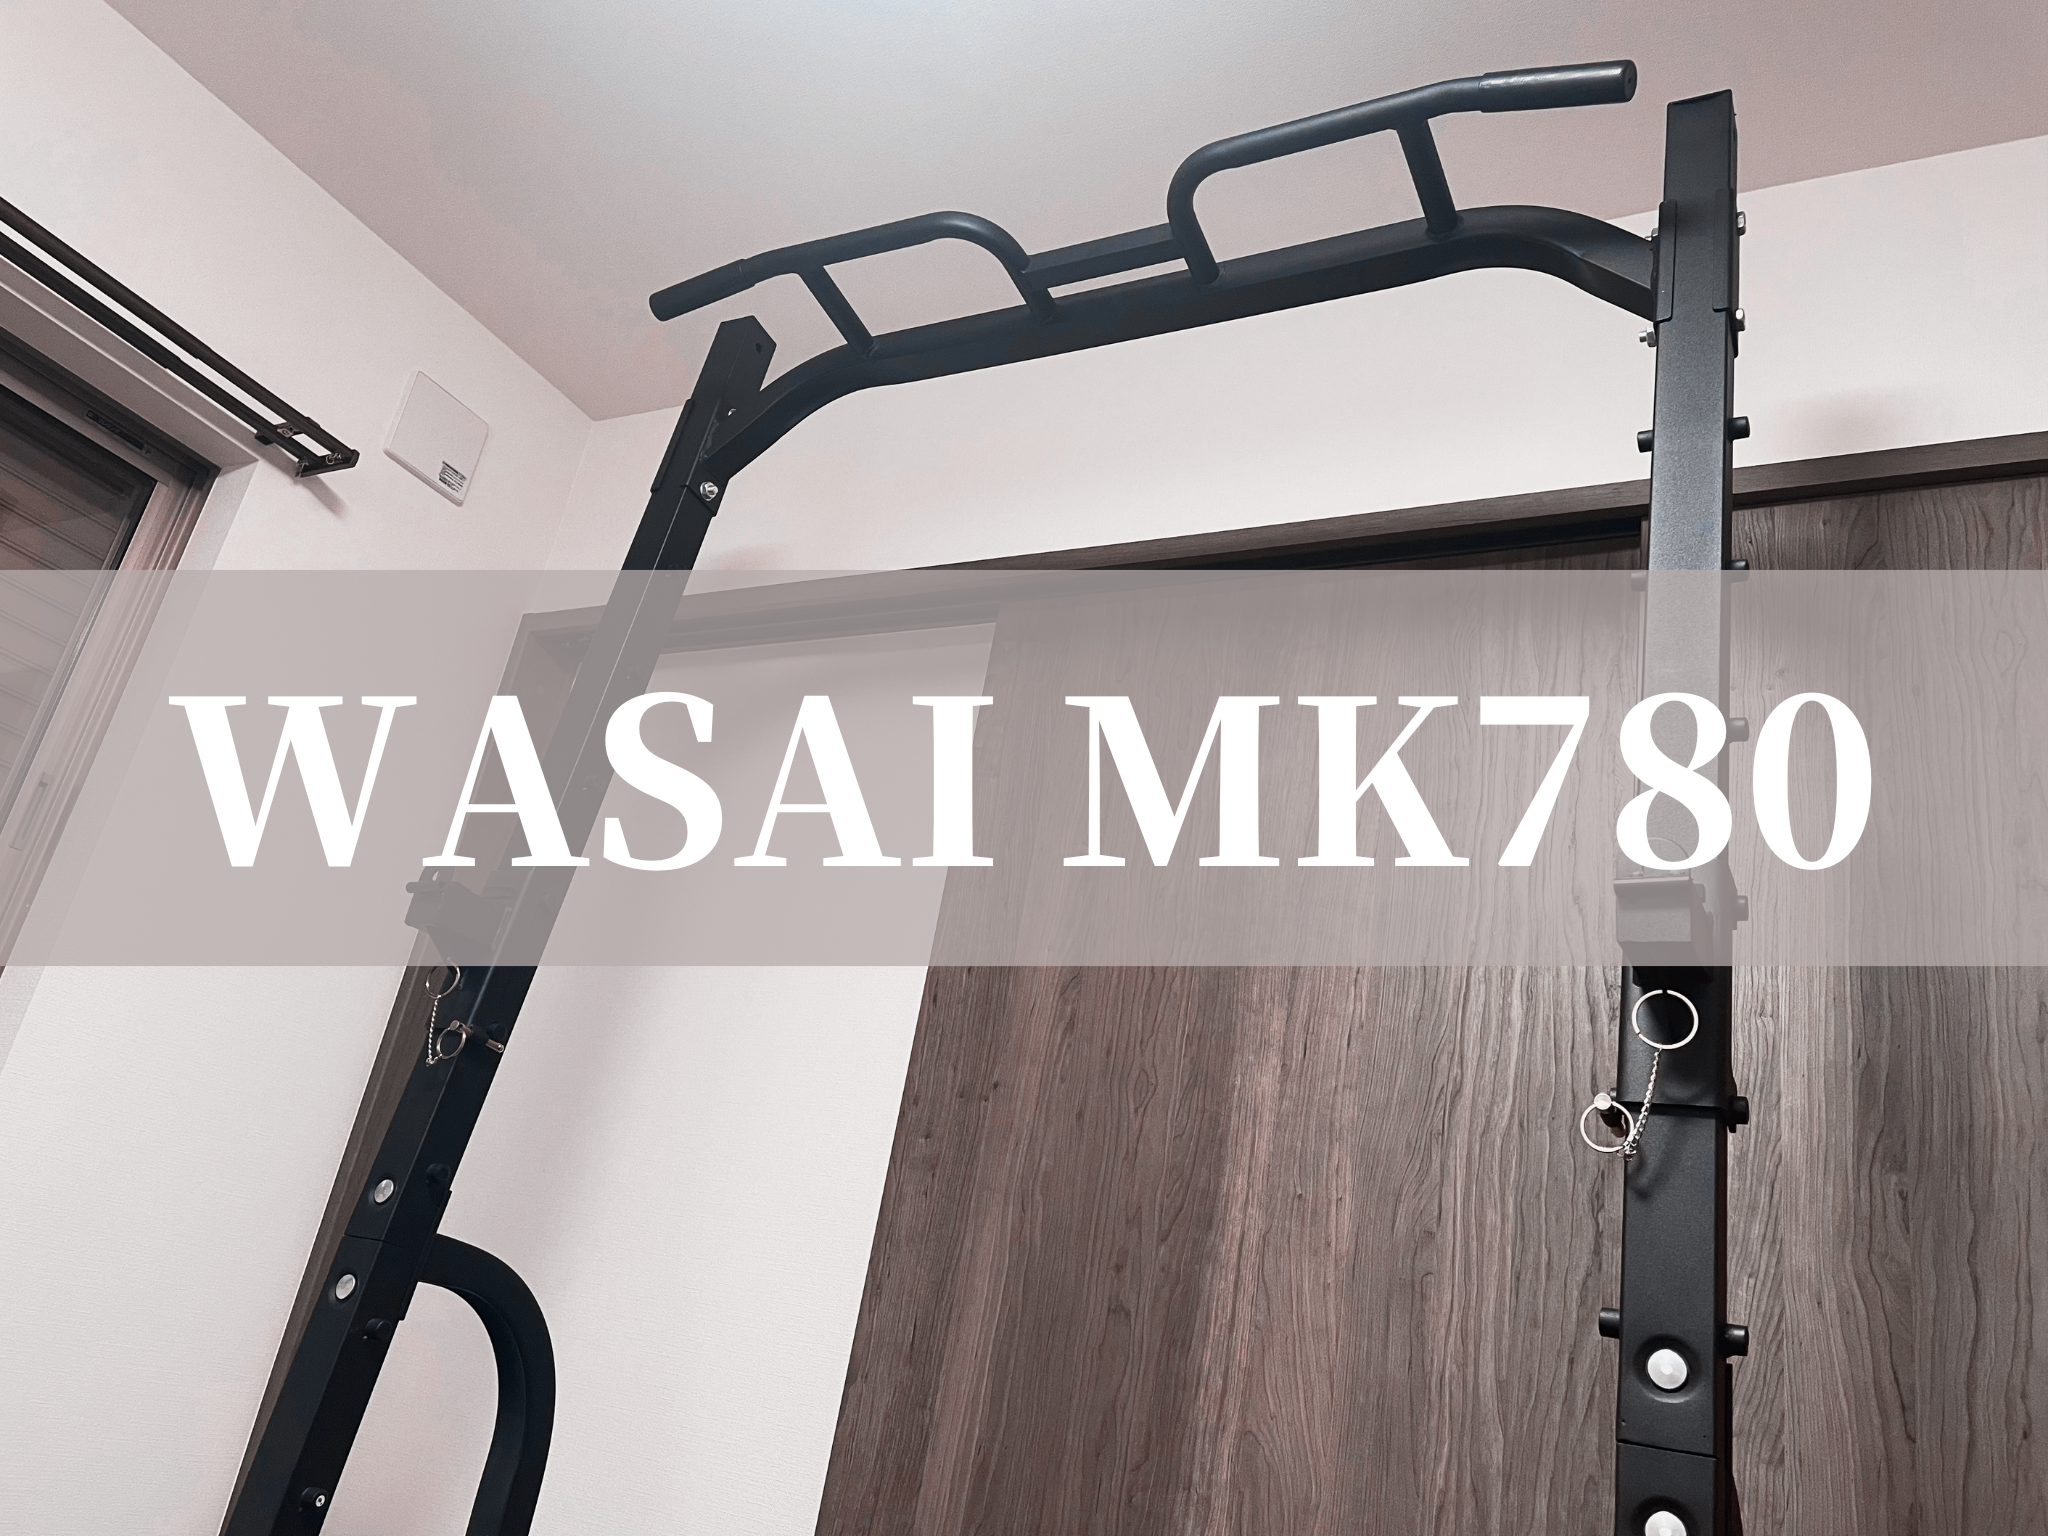 WASAI MK780